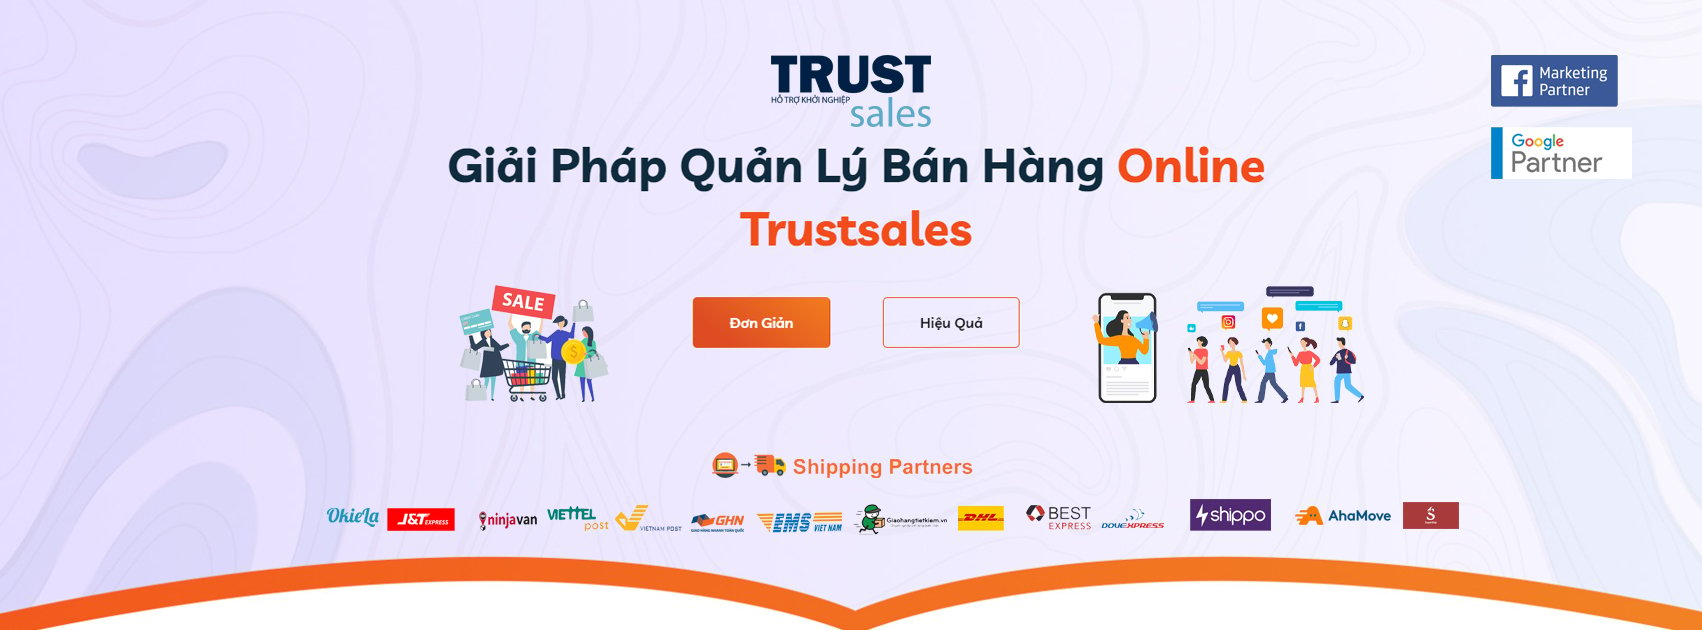 TrustSales: phù hợp cho việc bán hàng qua mạng xã hội